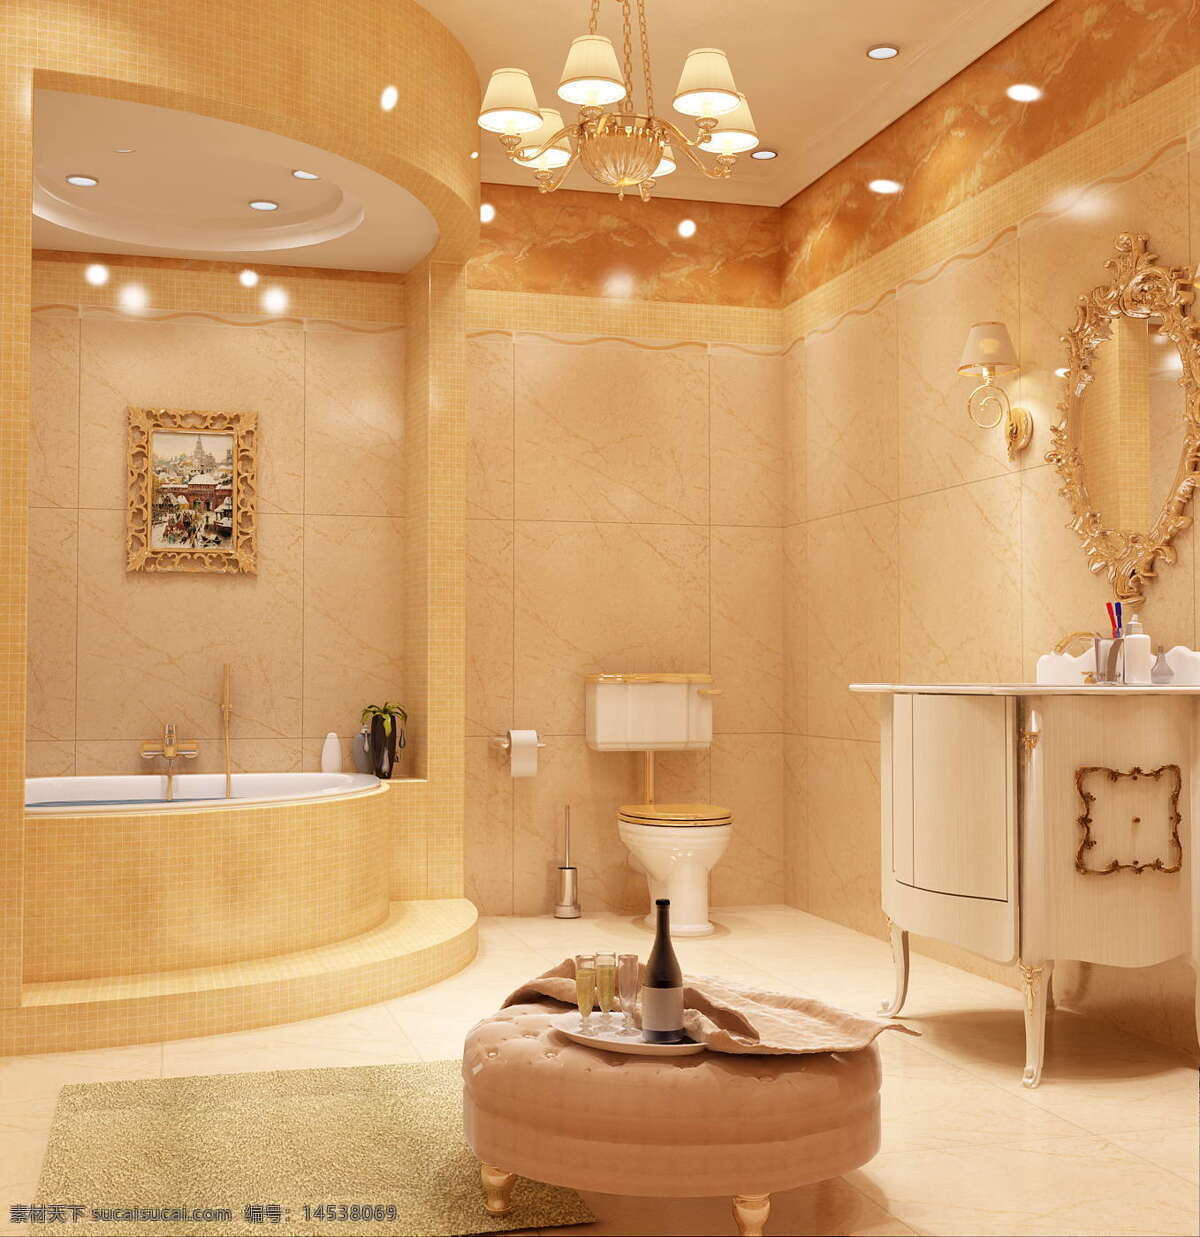 富丽堂皇 豪华 欧式 浴室 淋浴 高档 环境设计 室内设计